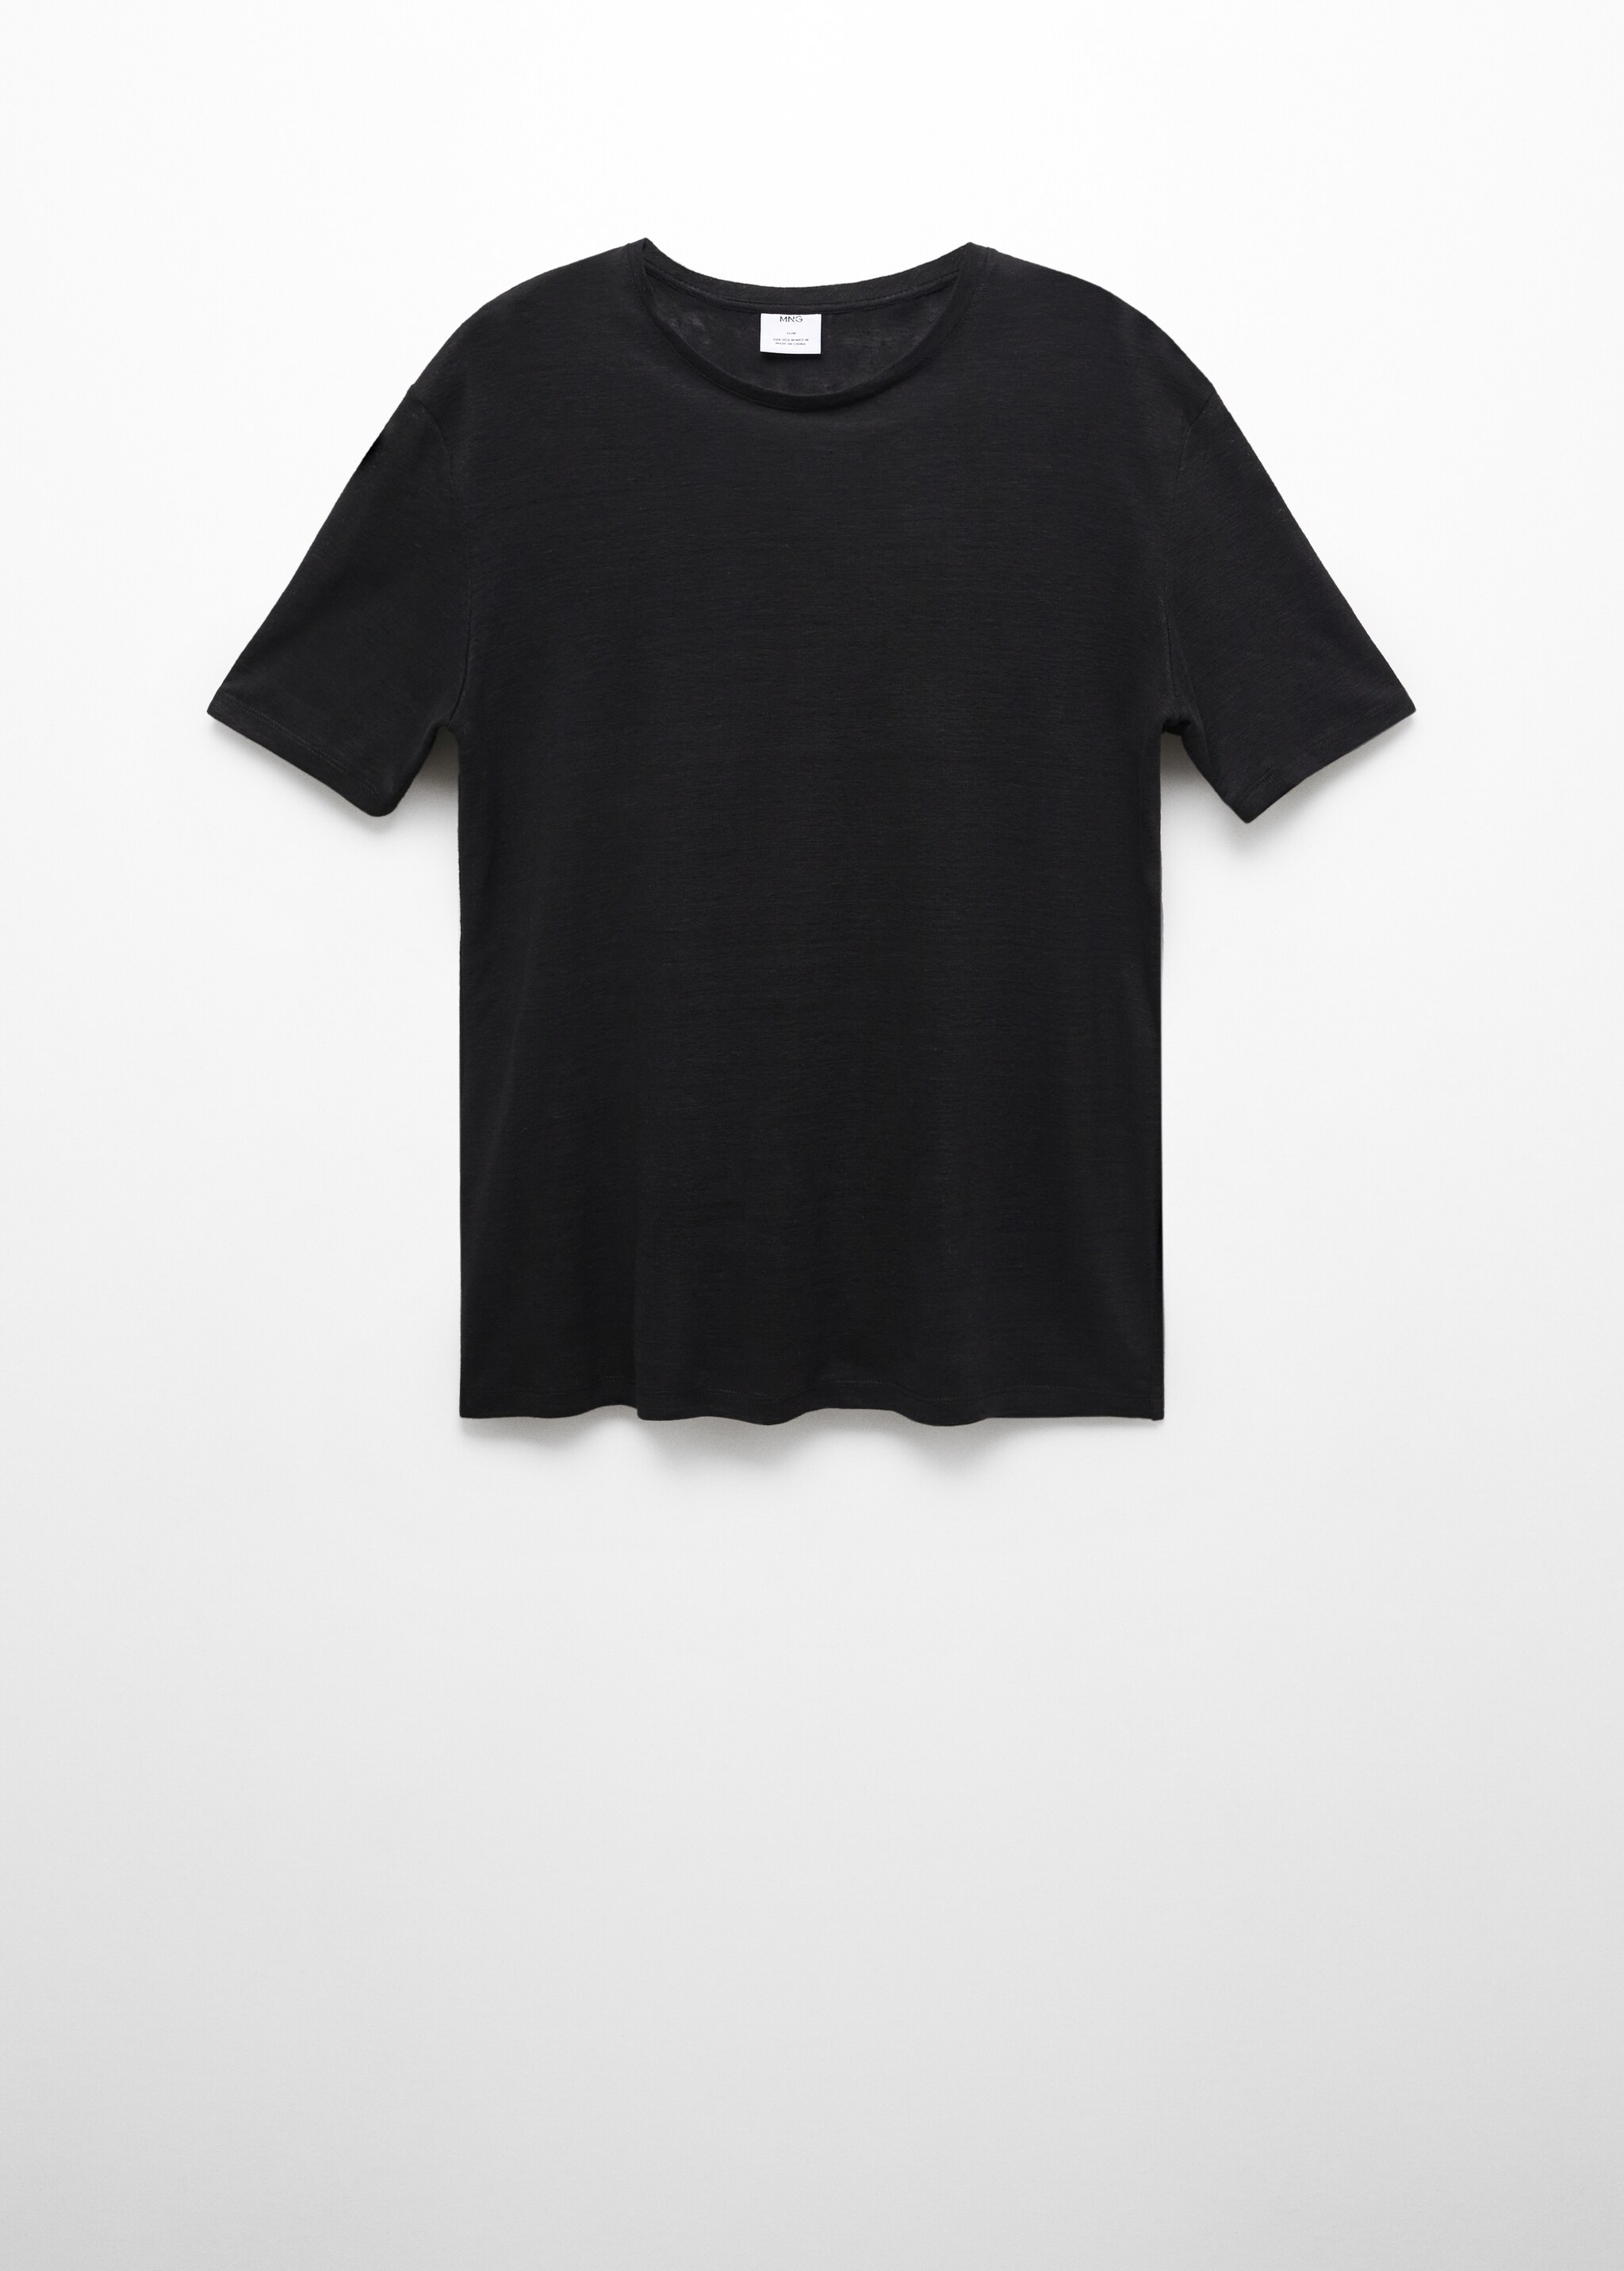 Camiseta Slim Fit 100% lino - Artículo sin modelo